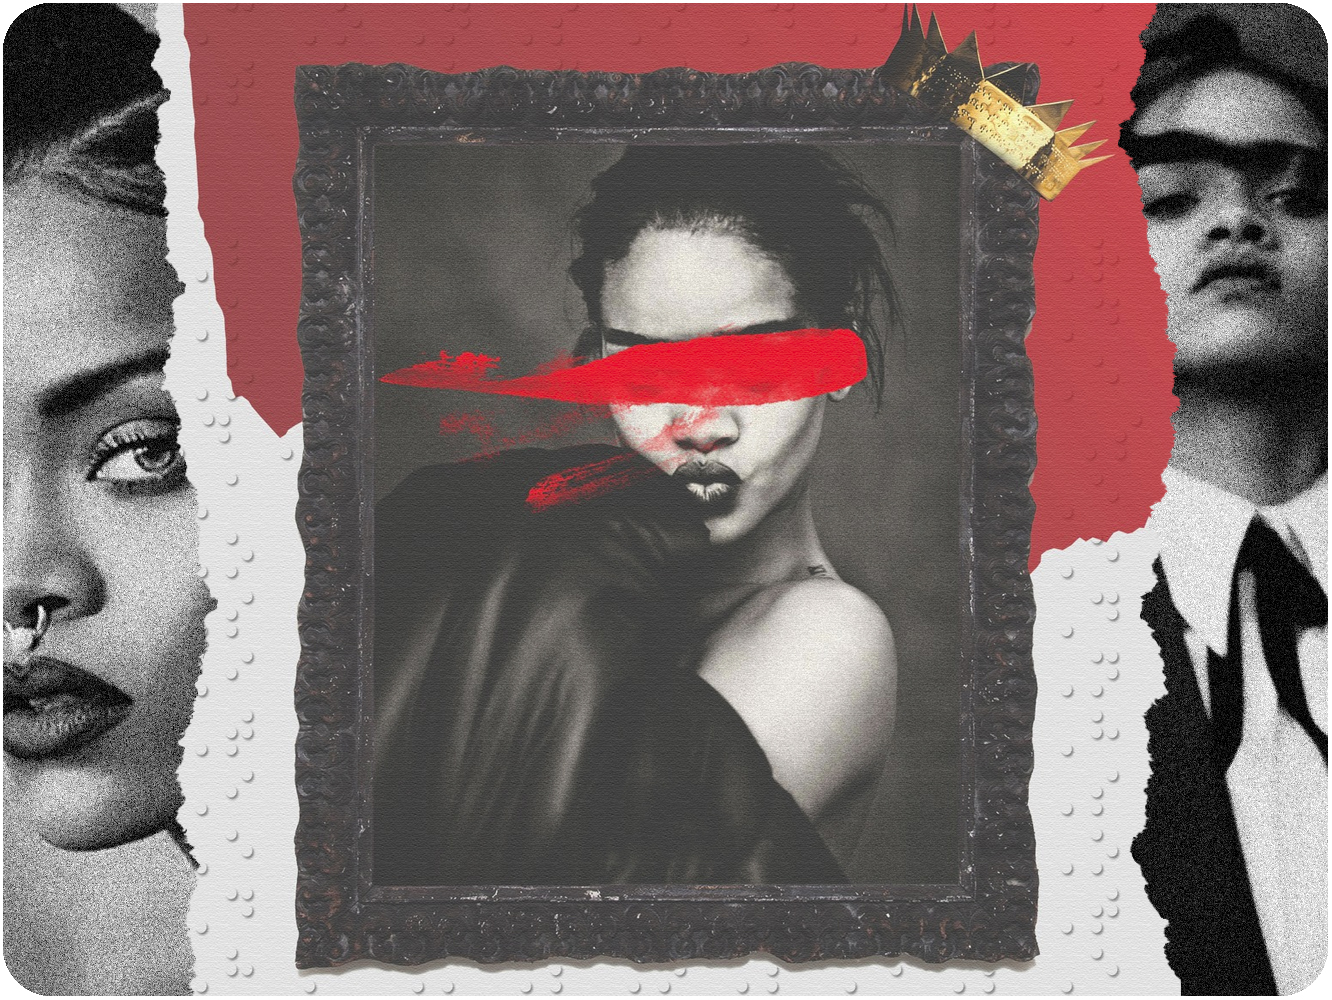  Cinco años de ‘Anti’, el disco de Rihanna que desafió todos los pronósticos